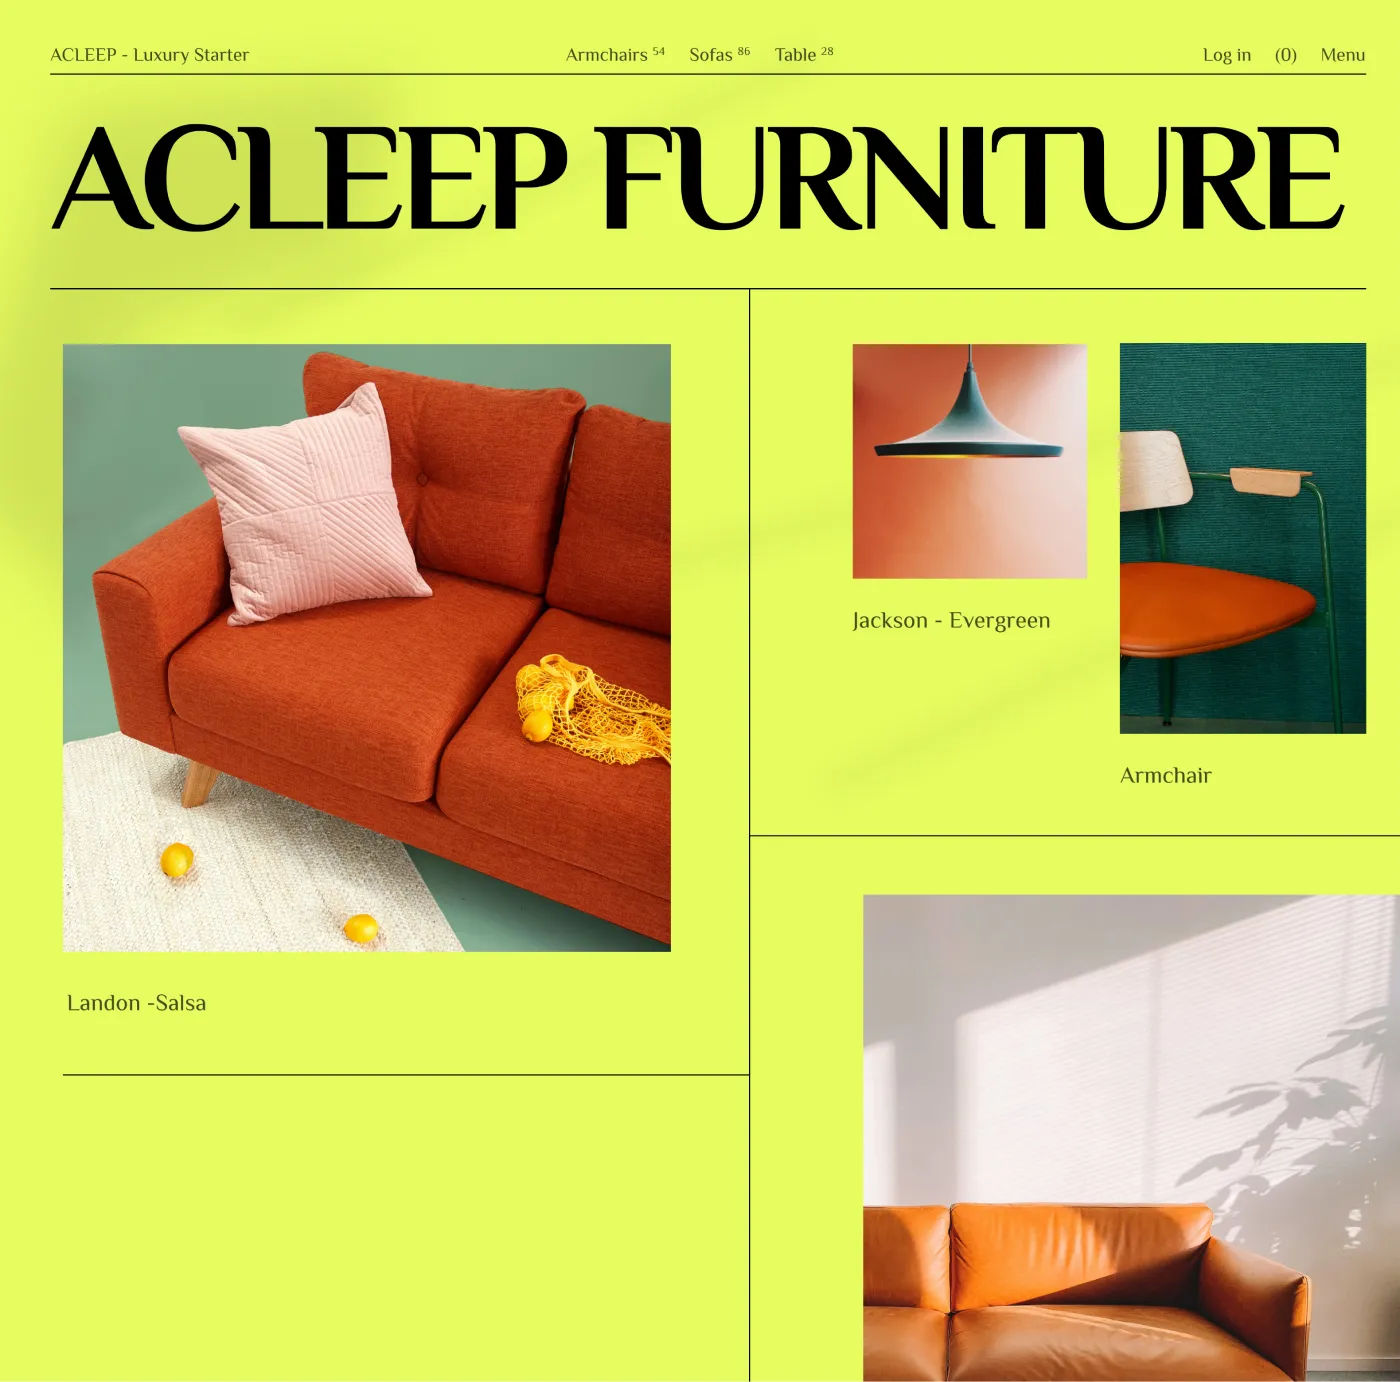 acleep-furniture-2